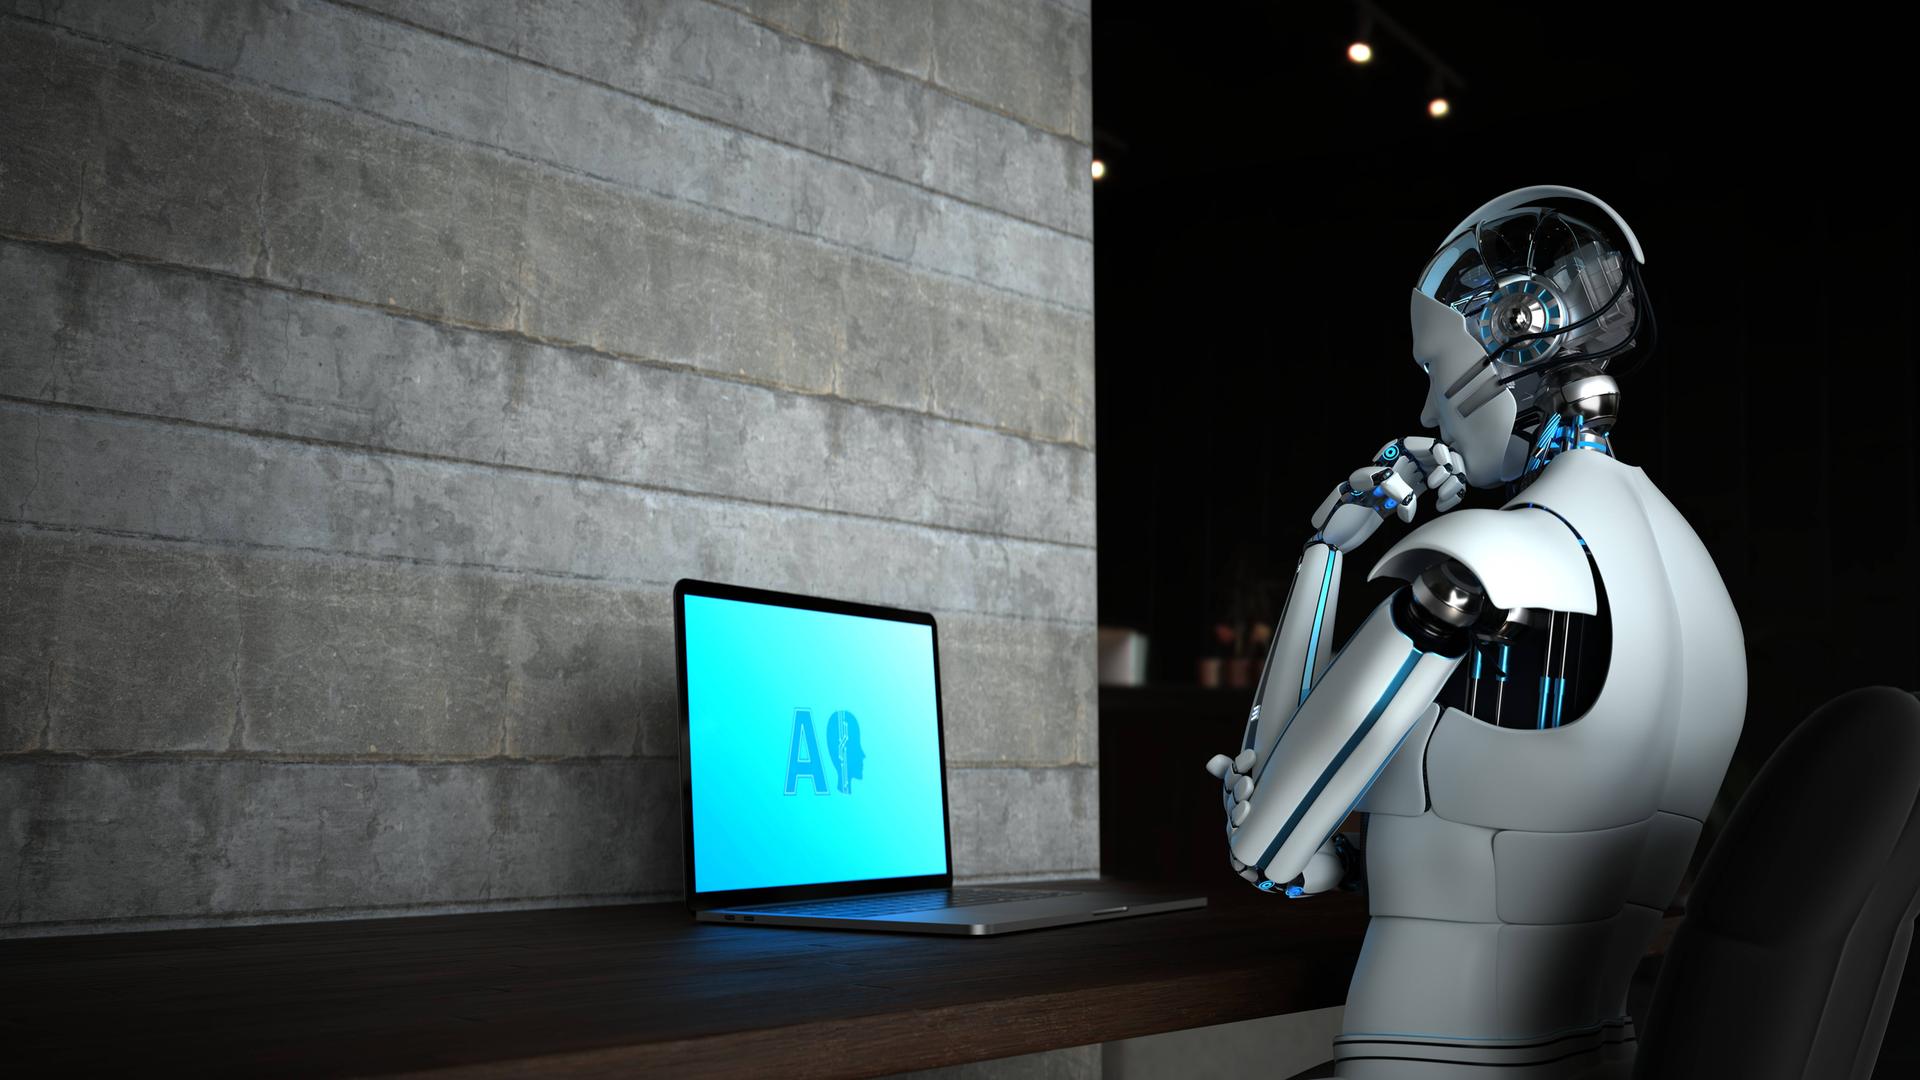 Ein Roboter mit menschlicher Erscheinung blickt auf einen Laptop auf dem die Buchstaben AI zu sehen sind.